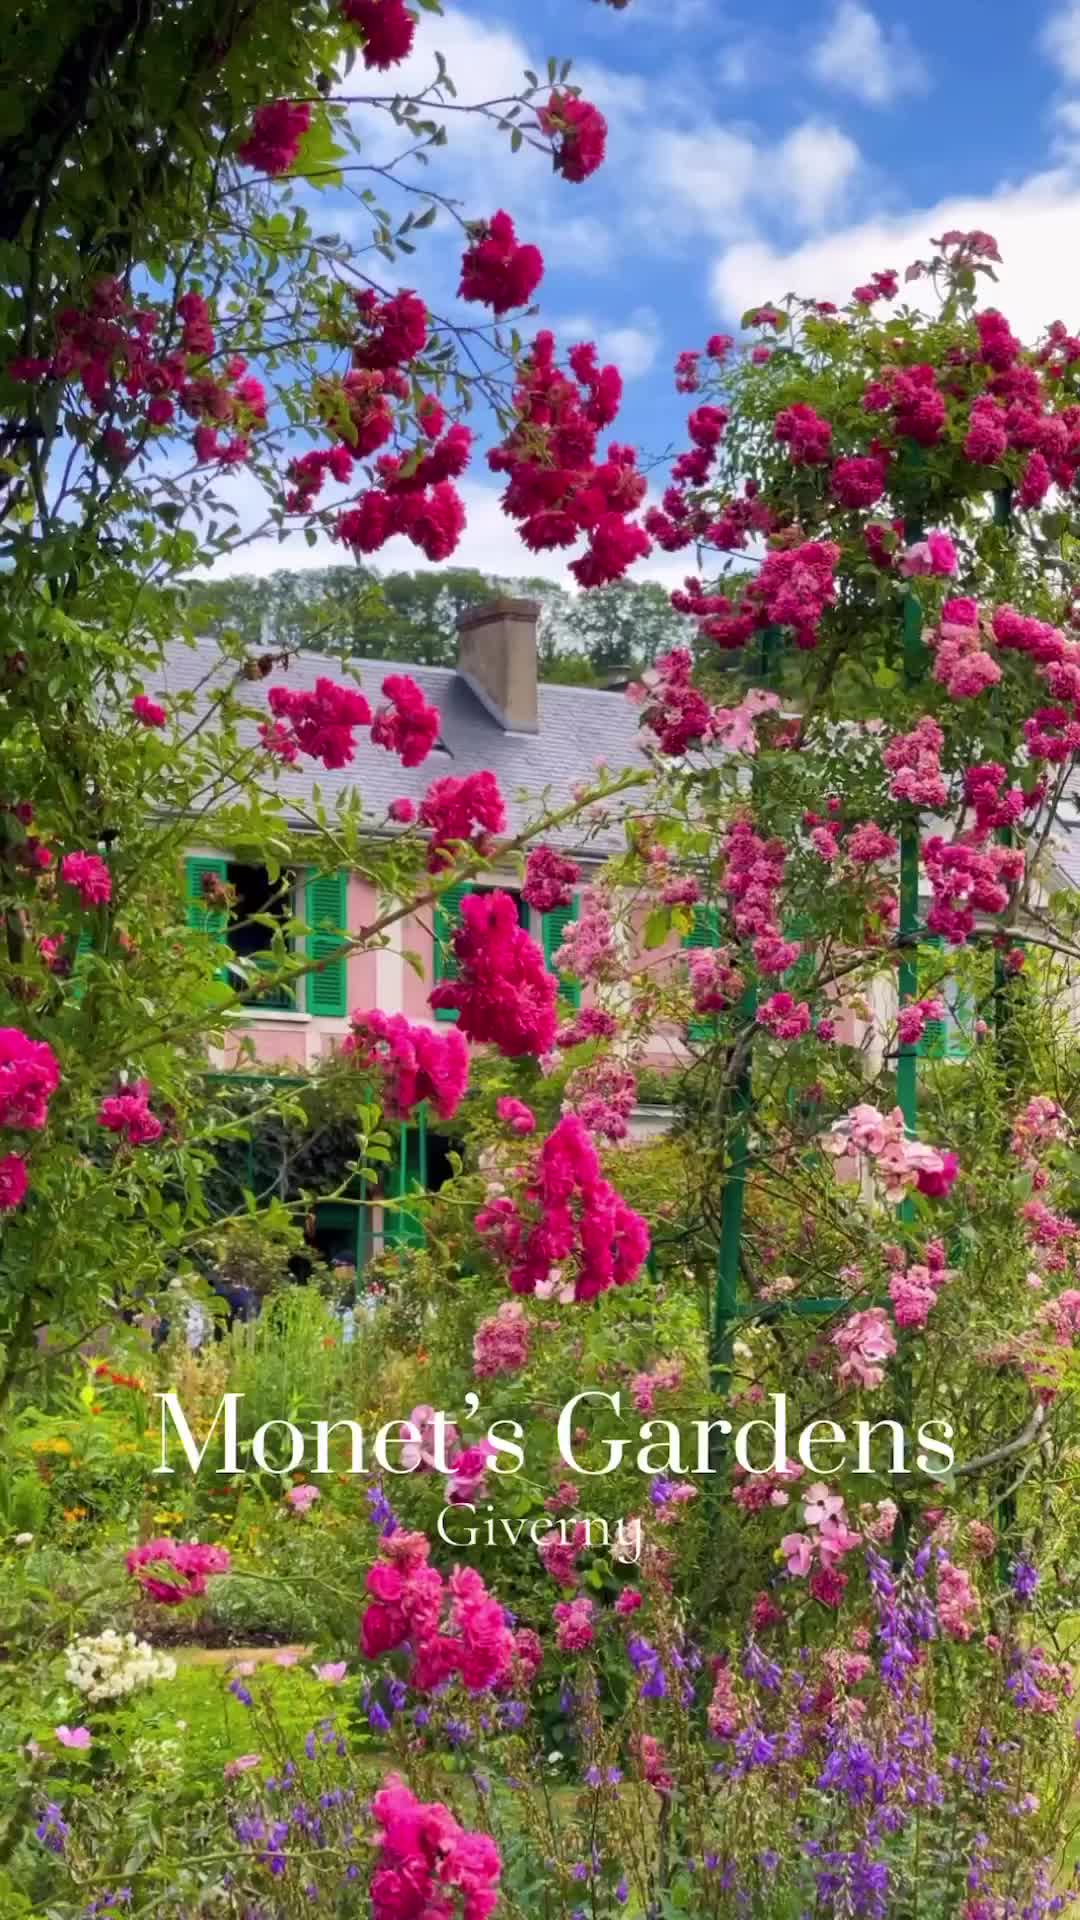 Visit Monet’s Gardens: A Hidden Gem Near Paris